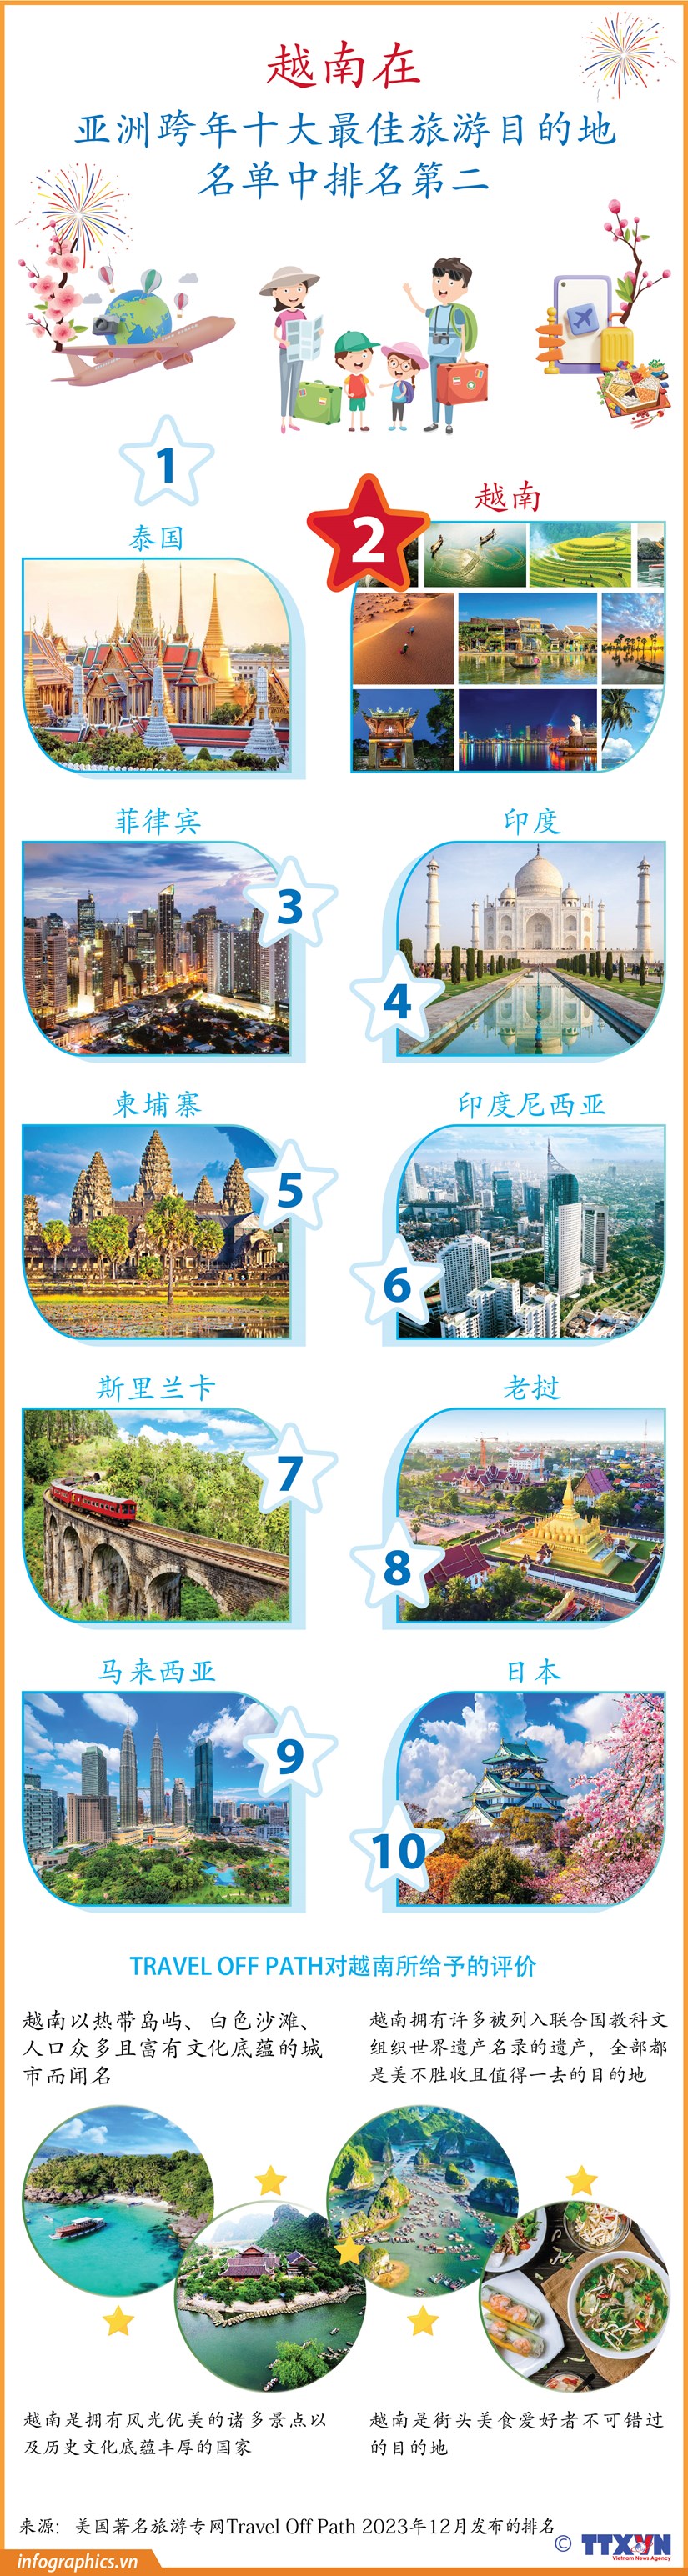 图表新闻：越南在亚洲跨年十大最佳旅游目的地名单中排名第二 hinh anh 1